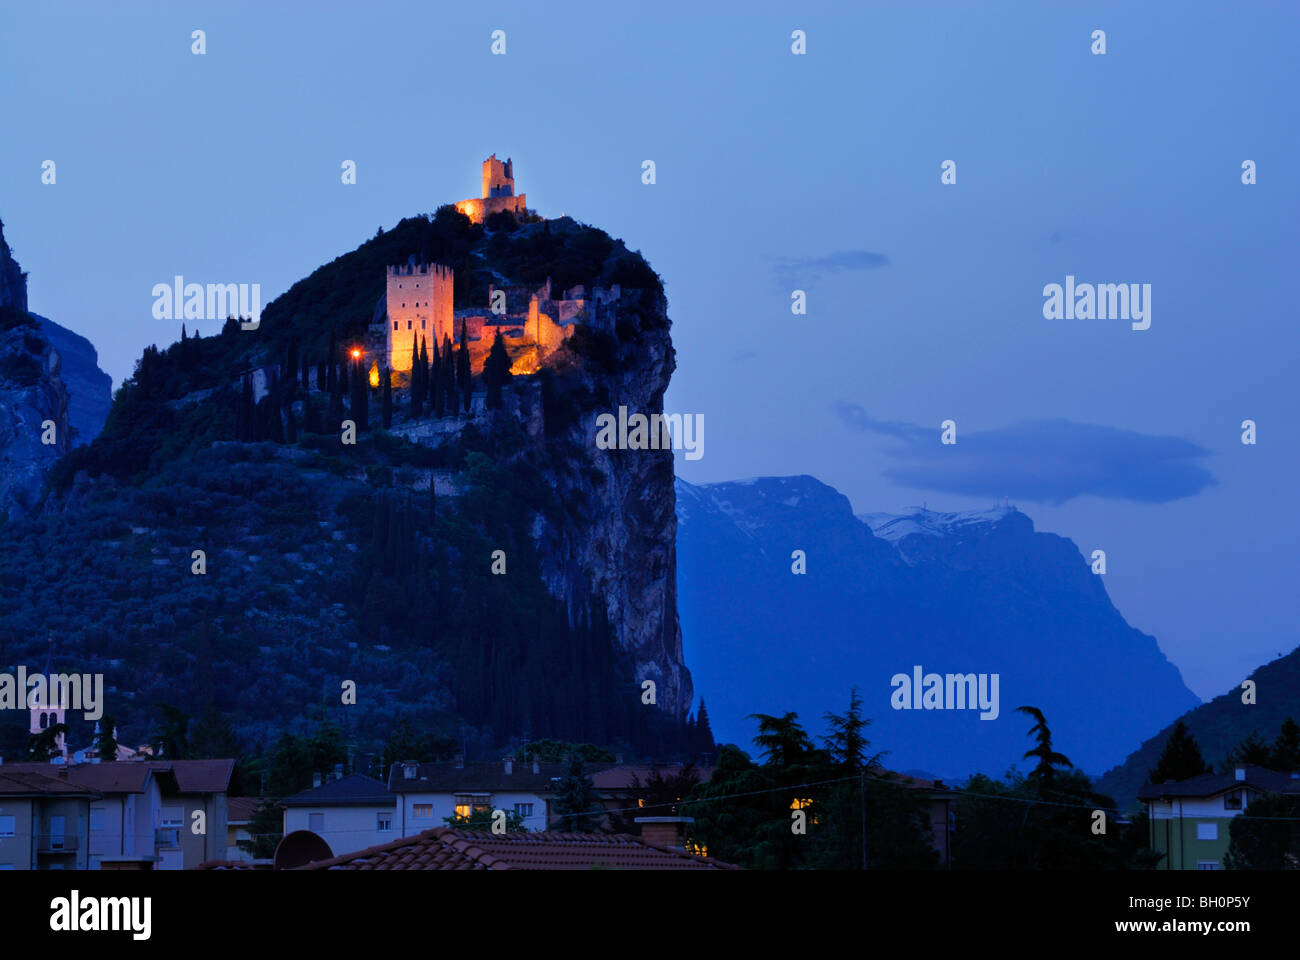 Castello illuminato la rovina di notte, Arco, Trentino-Alto Adige, Suedtirol, Italia Foto Stock